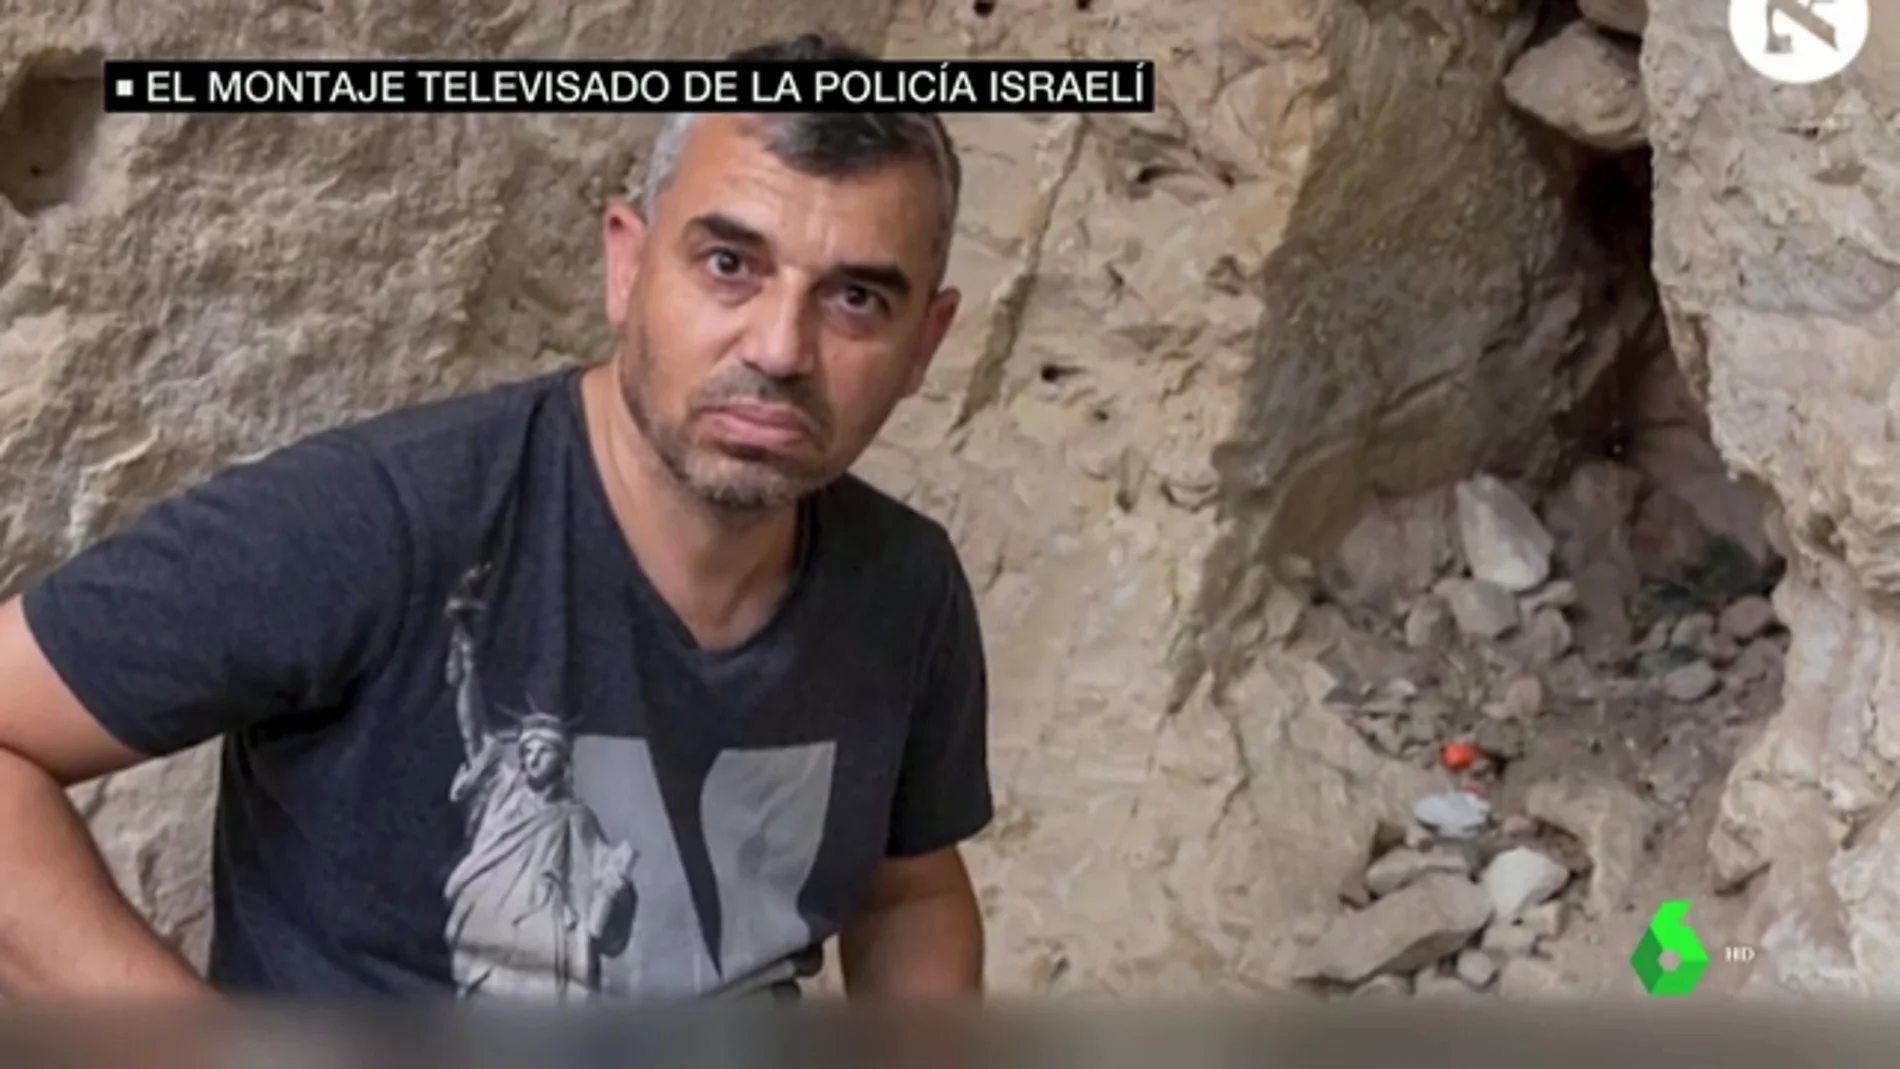 La Policía israelí coloca un fusil en casa de un palestino para falsear un programa de televisión